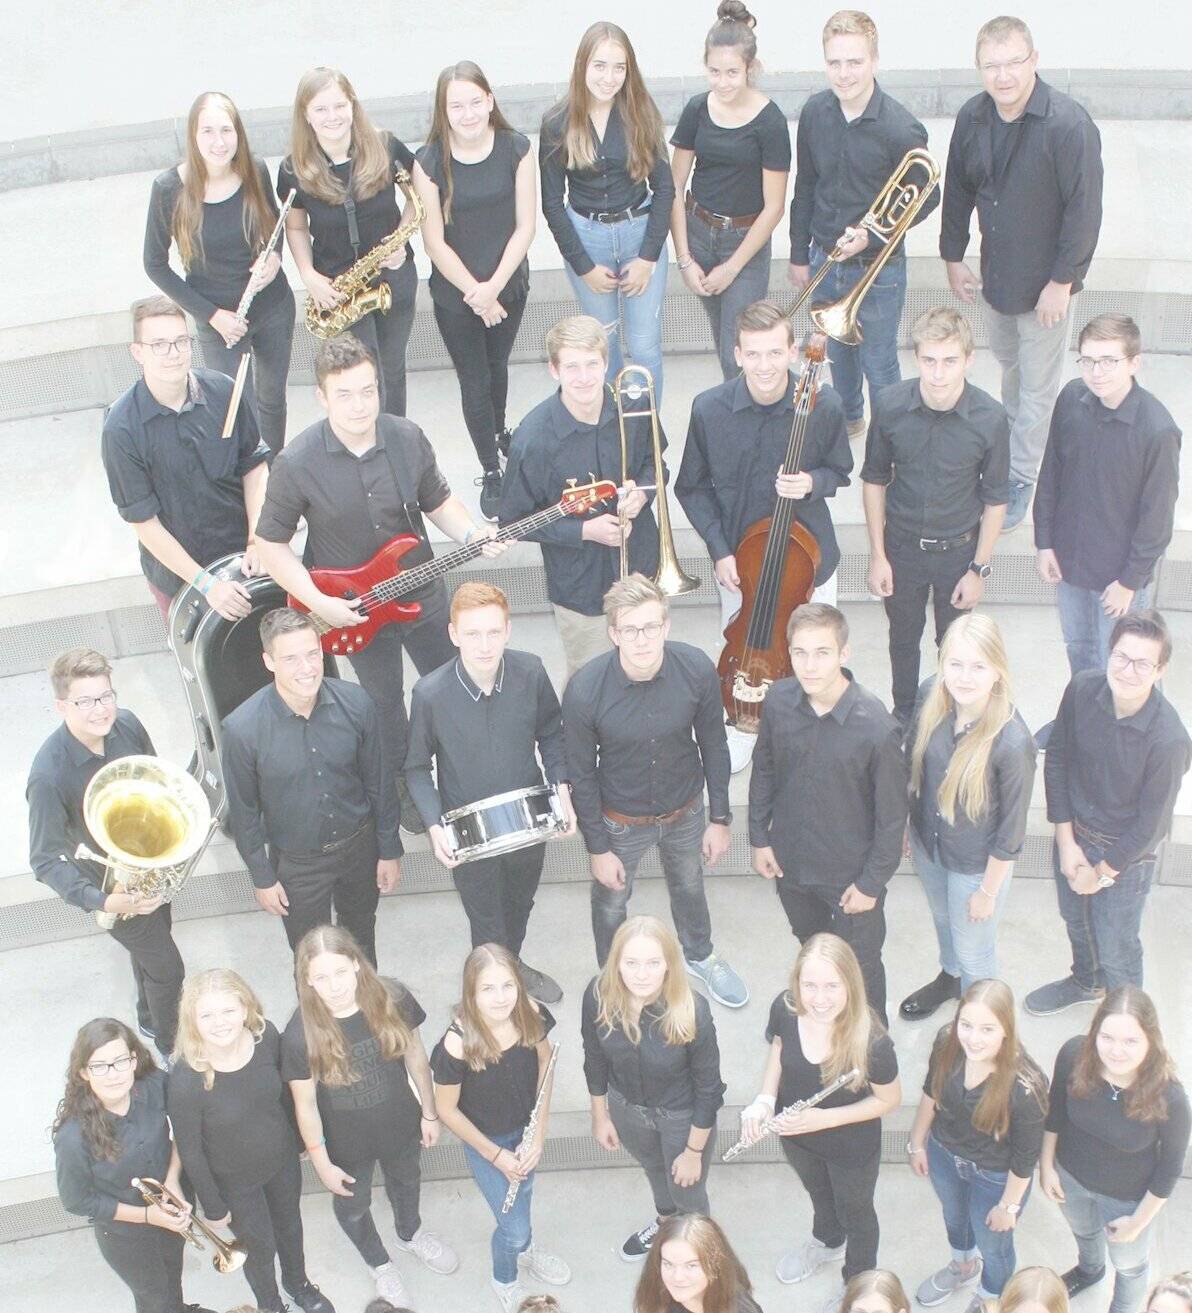  Die Concert Band des Gymnasiums Jüchen hat es geschafft, das Ensemble auch während der Corona-Zeit zu halten. 
  